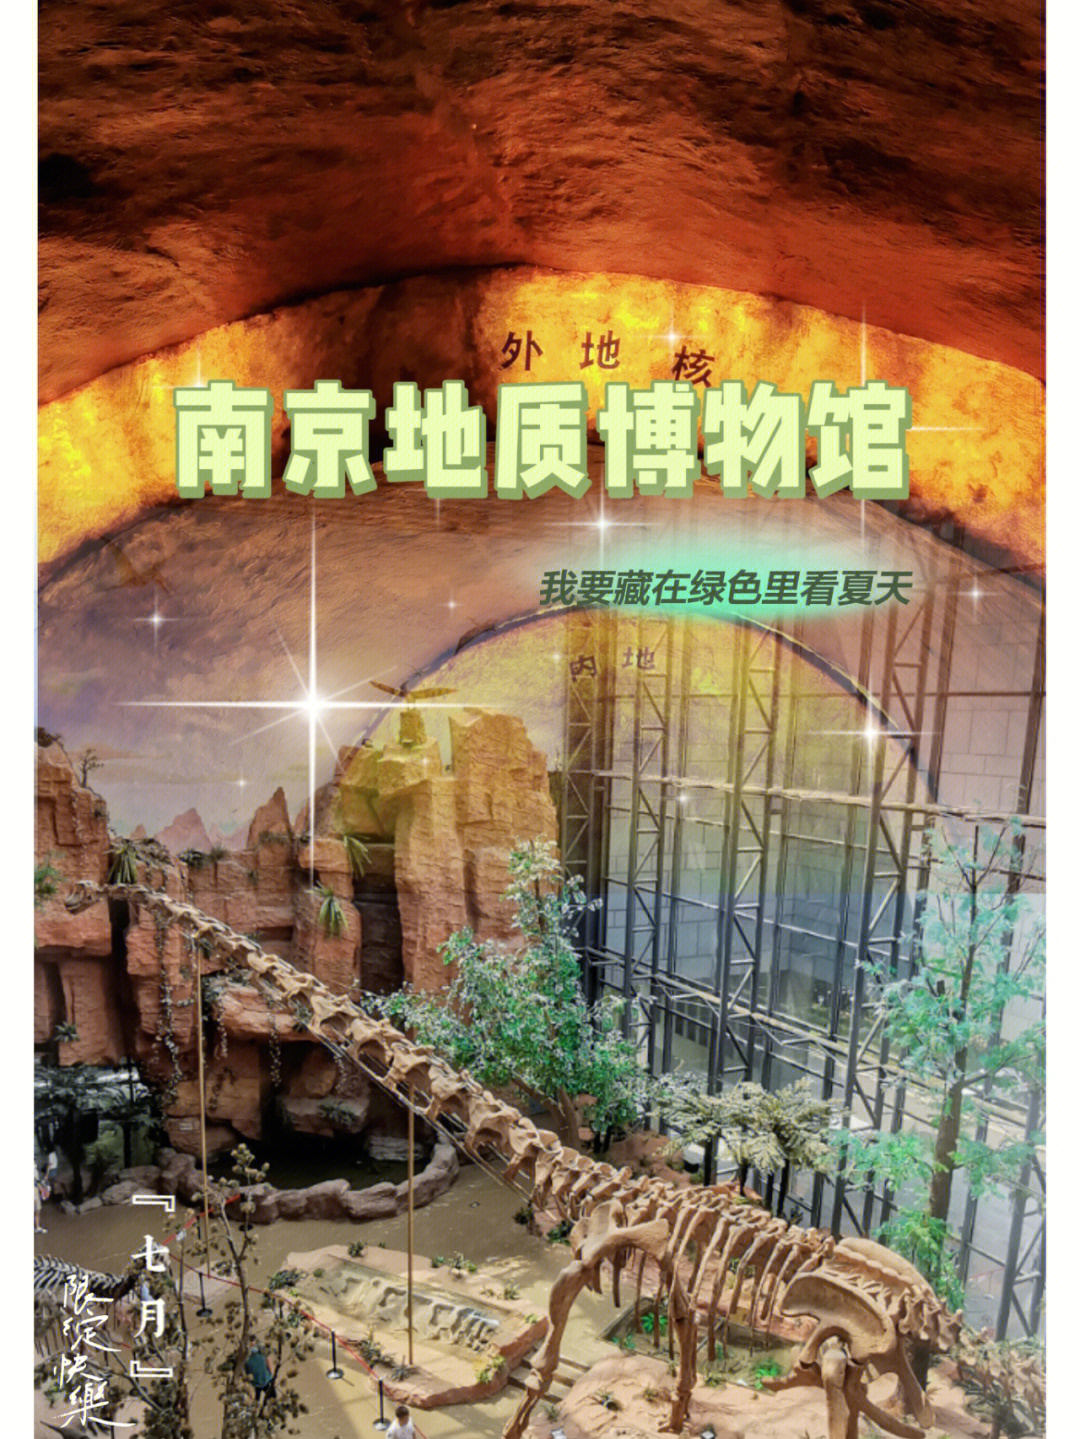 切记预约南京地质博物馆